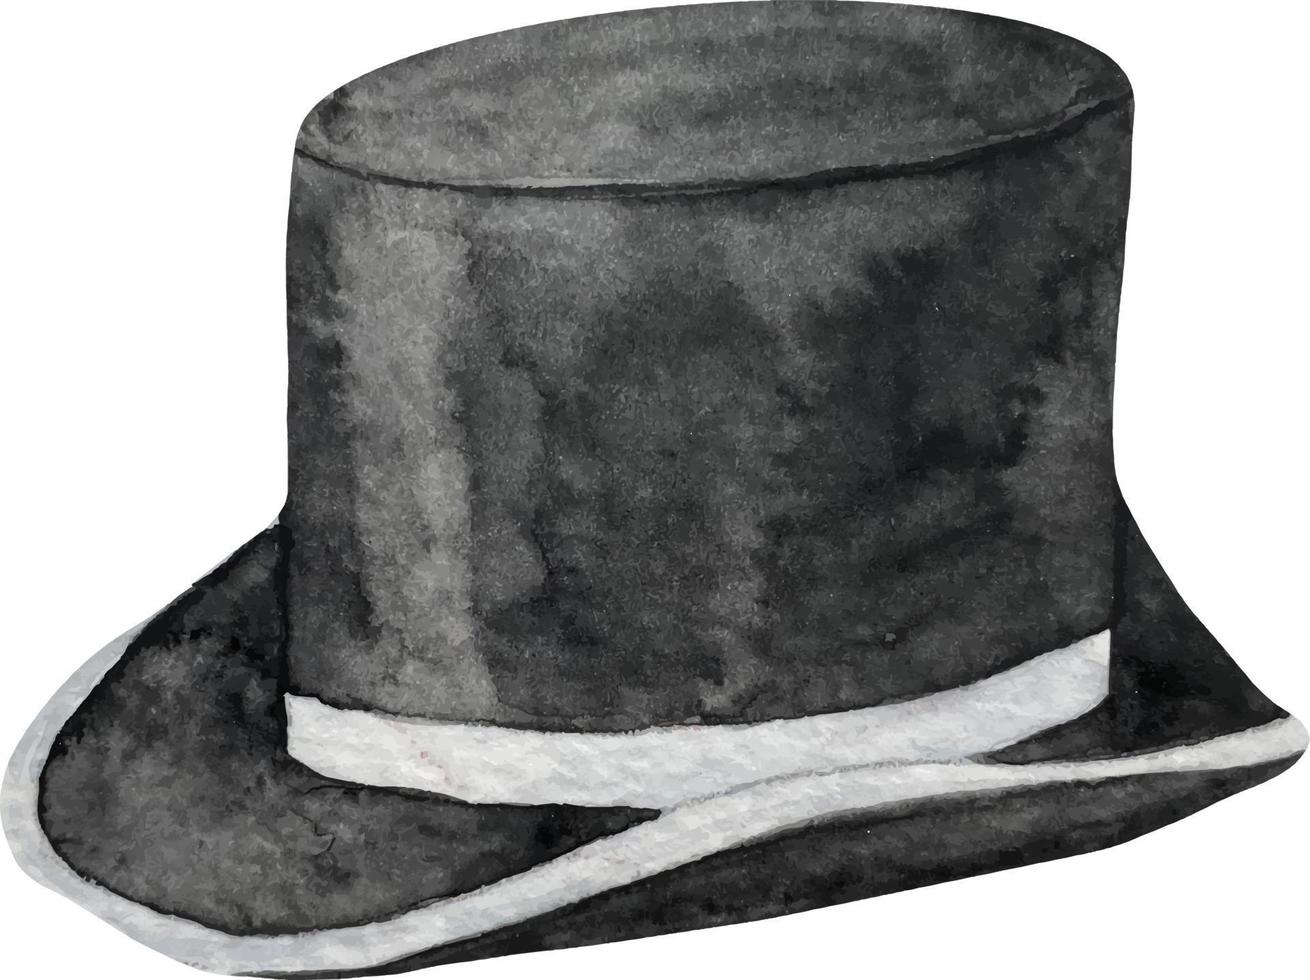 chapeau de cylindre classique de mariage aquarelle. couvre-chef de mode pour messieurs dans un cylindre noir de style vintage. vecteur